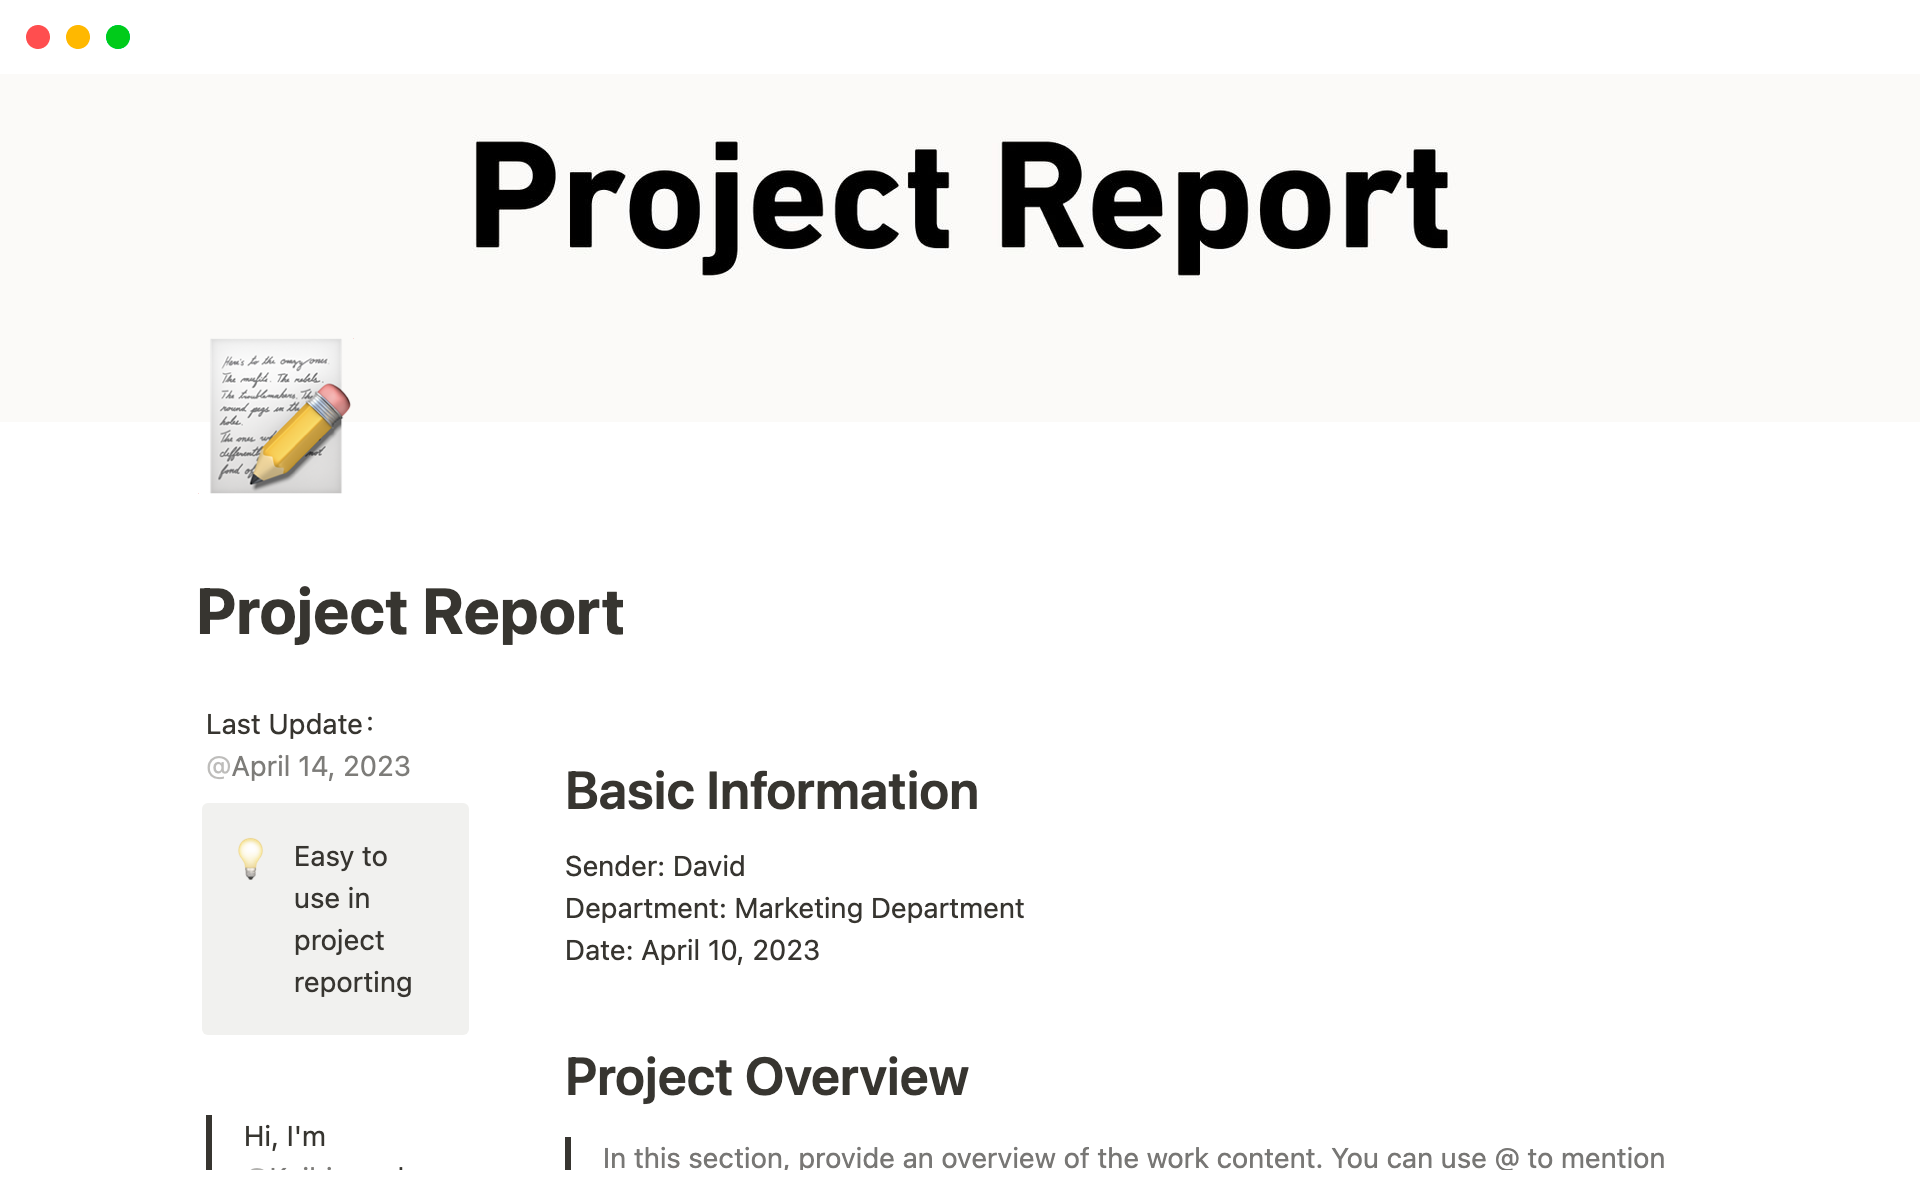 Uma prévia do modelo para Project Report